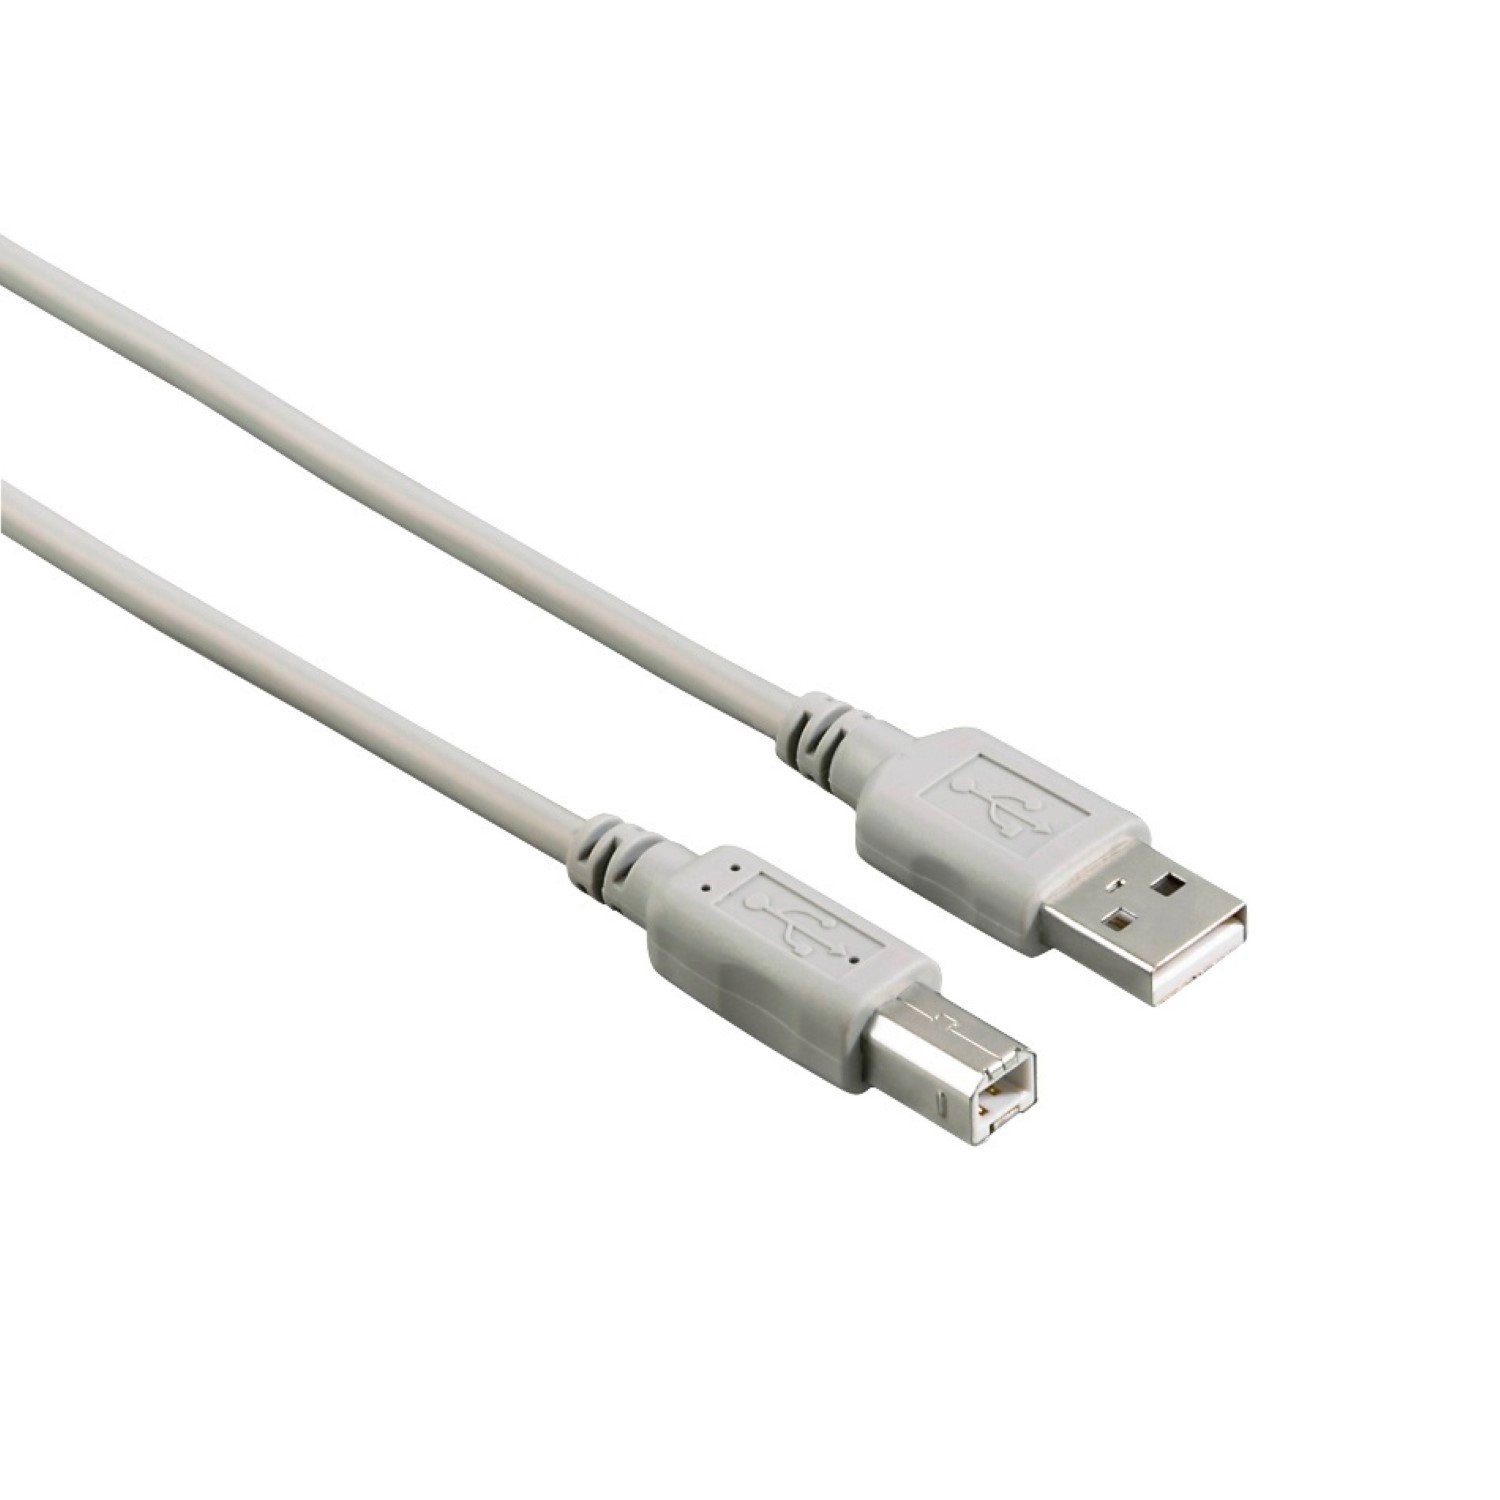 Hama USB-Kabel Anschlusskabel USB 2.0 3m USB-Kabel, USB Typ A,USB Typ A,  Keine (300 cm), USB 2.0, passend für PC, Notebook, Maus, Mouse, Tastatur,  Drucker, Scanner, Webcam, externe Festplatte HDD, etc.